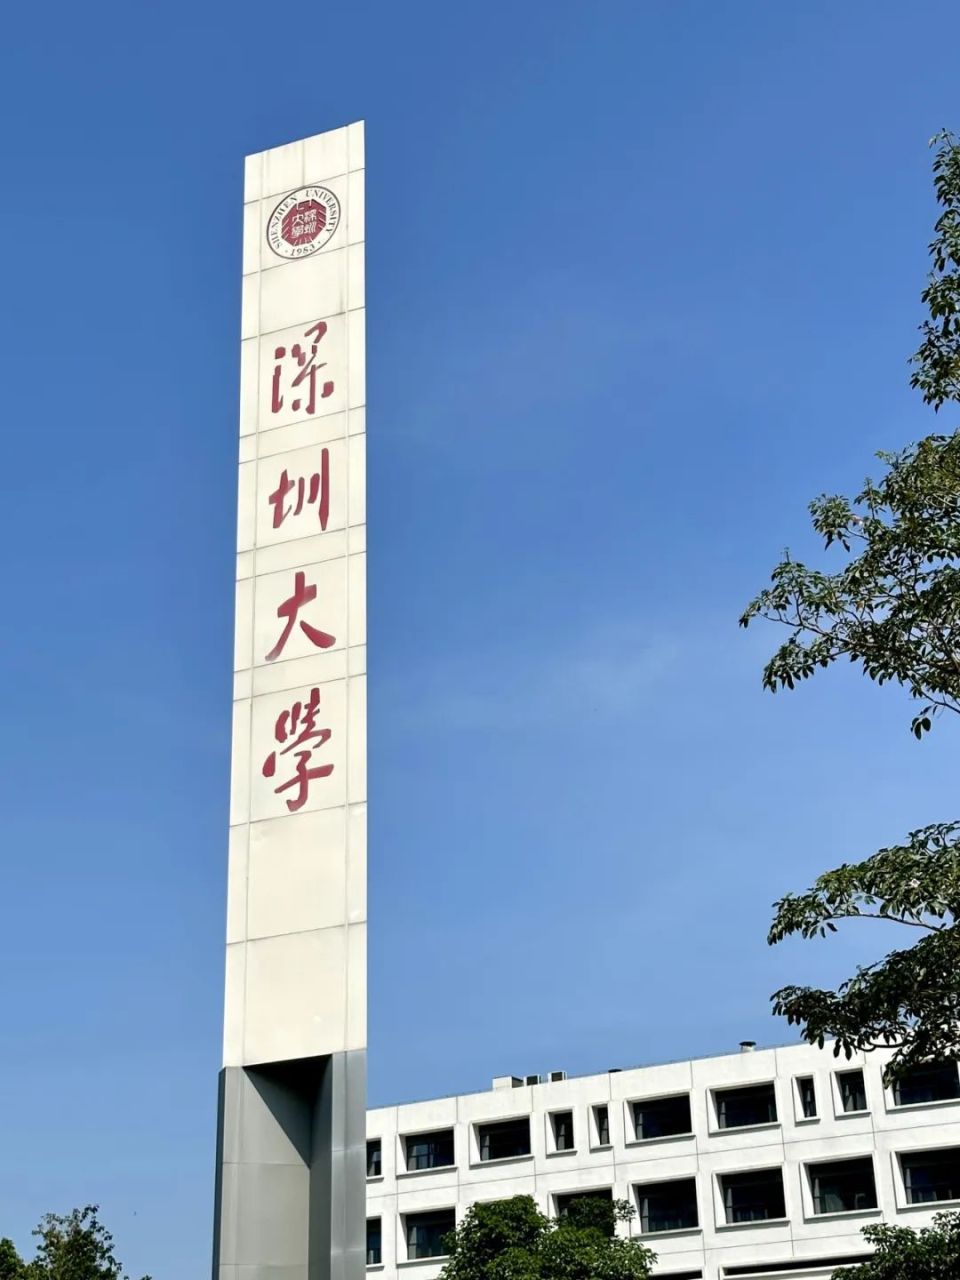 72平方公里校园总面积深圳大学综合性大学是伴随深圳成长起来的